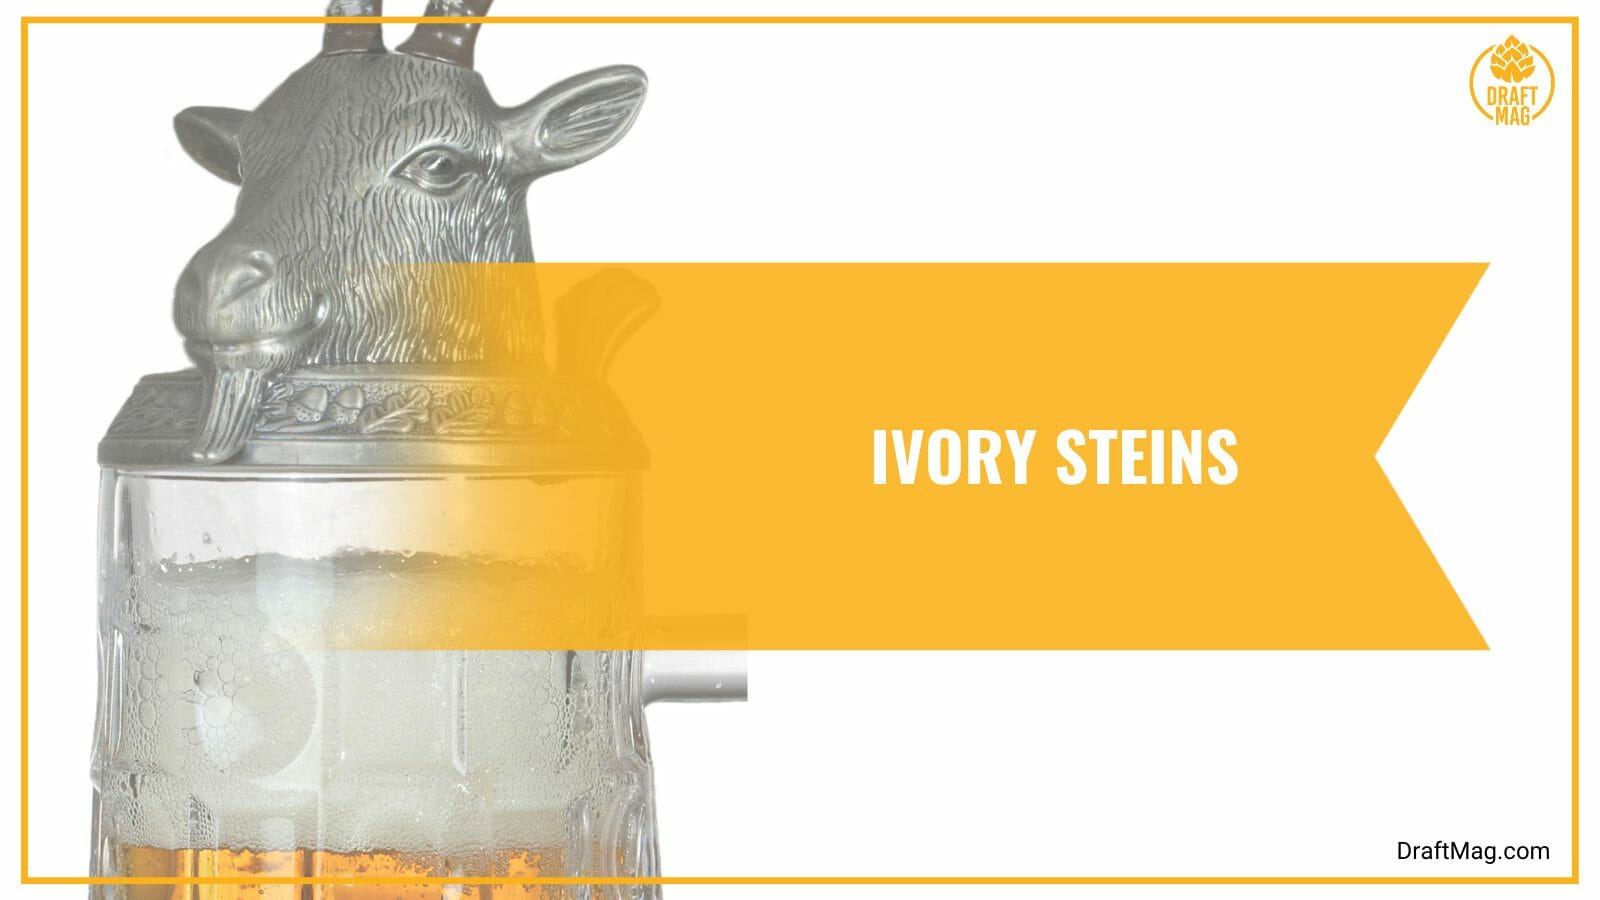 Ivory beer steins